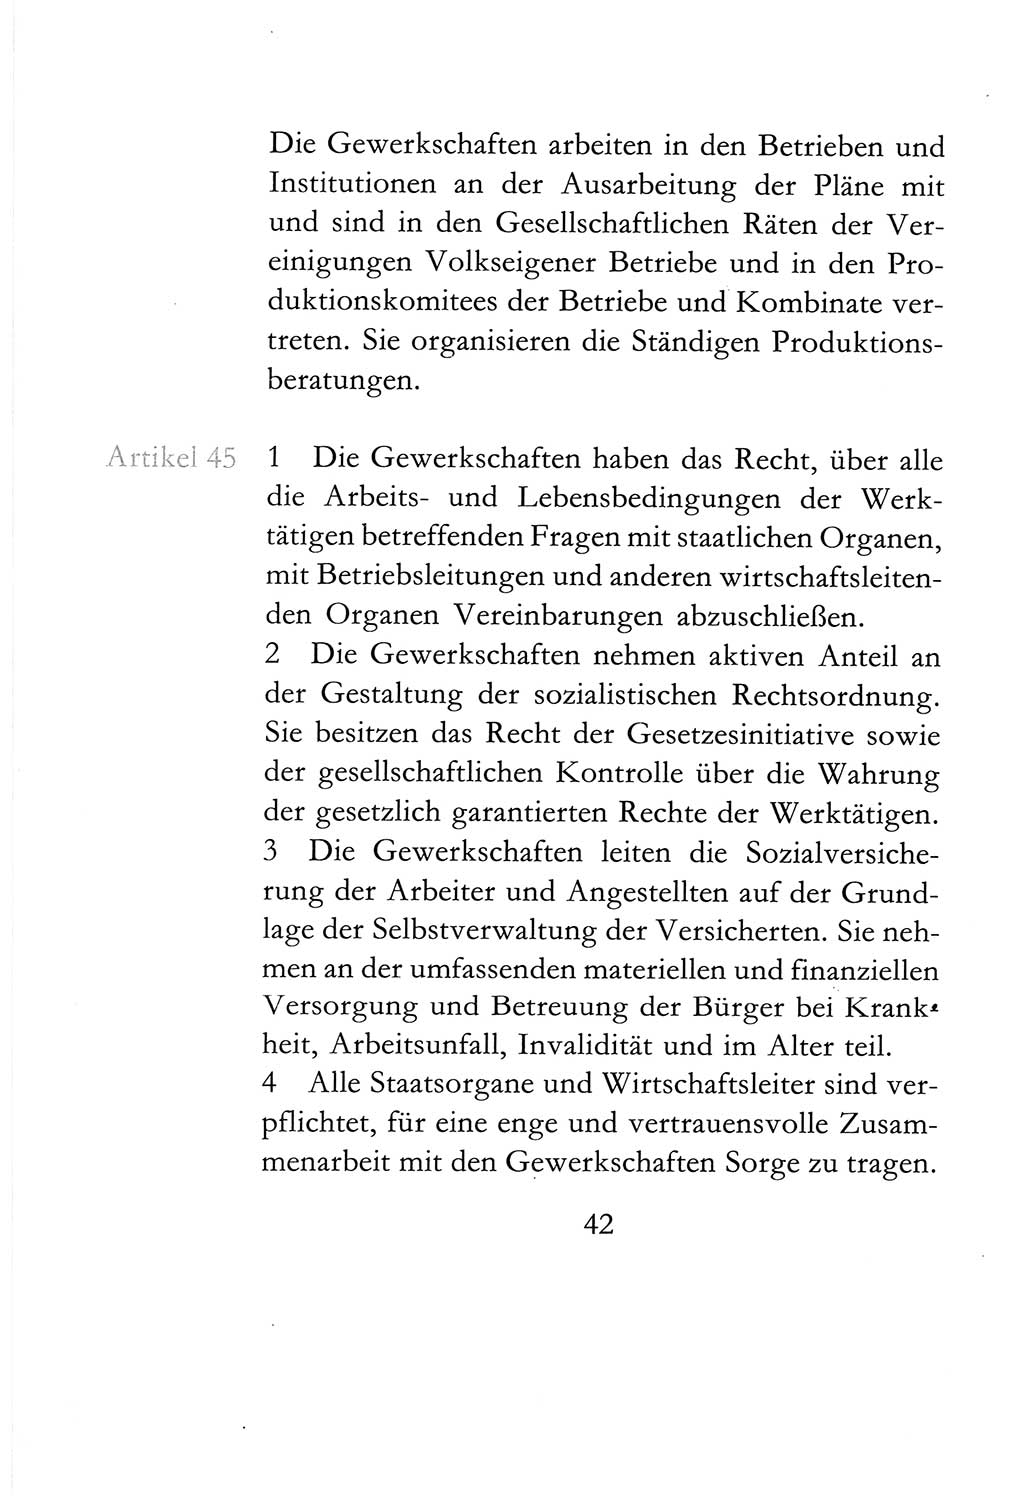 Verfassung der Deutschen Demokratischen Republik (DDR) vom 6. April 1968, Seite 42 (Verf. DDR 1968, S. 42)